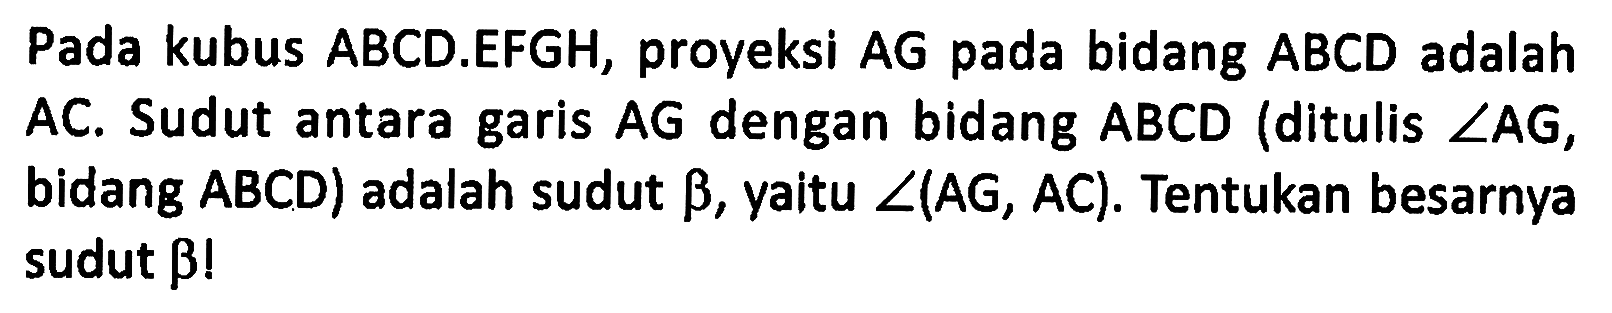 Pada kubus ABCD.EFGH, proyeksi AG pada bidang ABCD adalah AC. Sudut antara garis AG dengan bidang ABCD (ditulis ZAG, bidang ABCD) adalah sudut betha, yaitu sudut(AG, AC). Tentukan besarnya sudut betha!